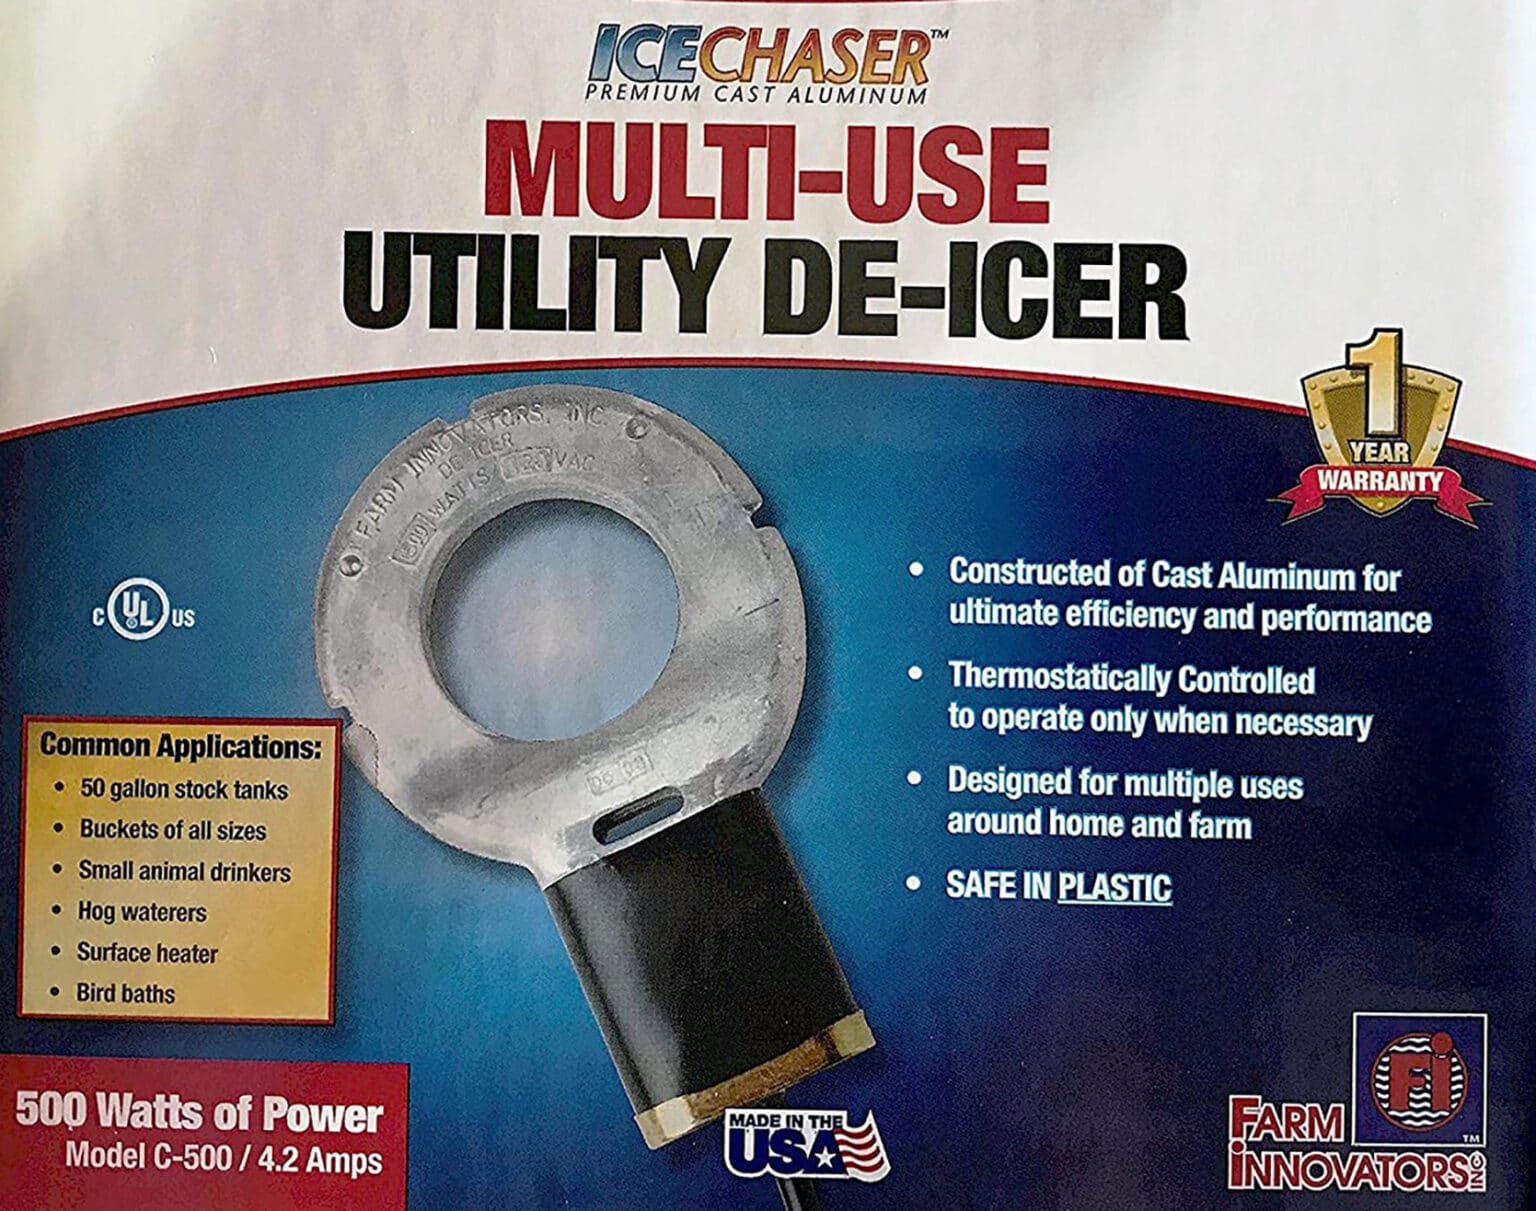 Submergible Cast Aluminum Utility De-Icer review